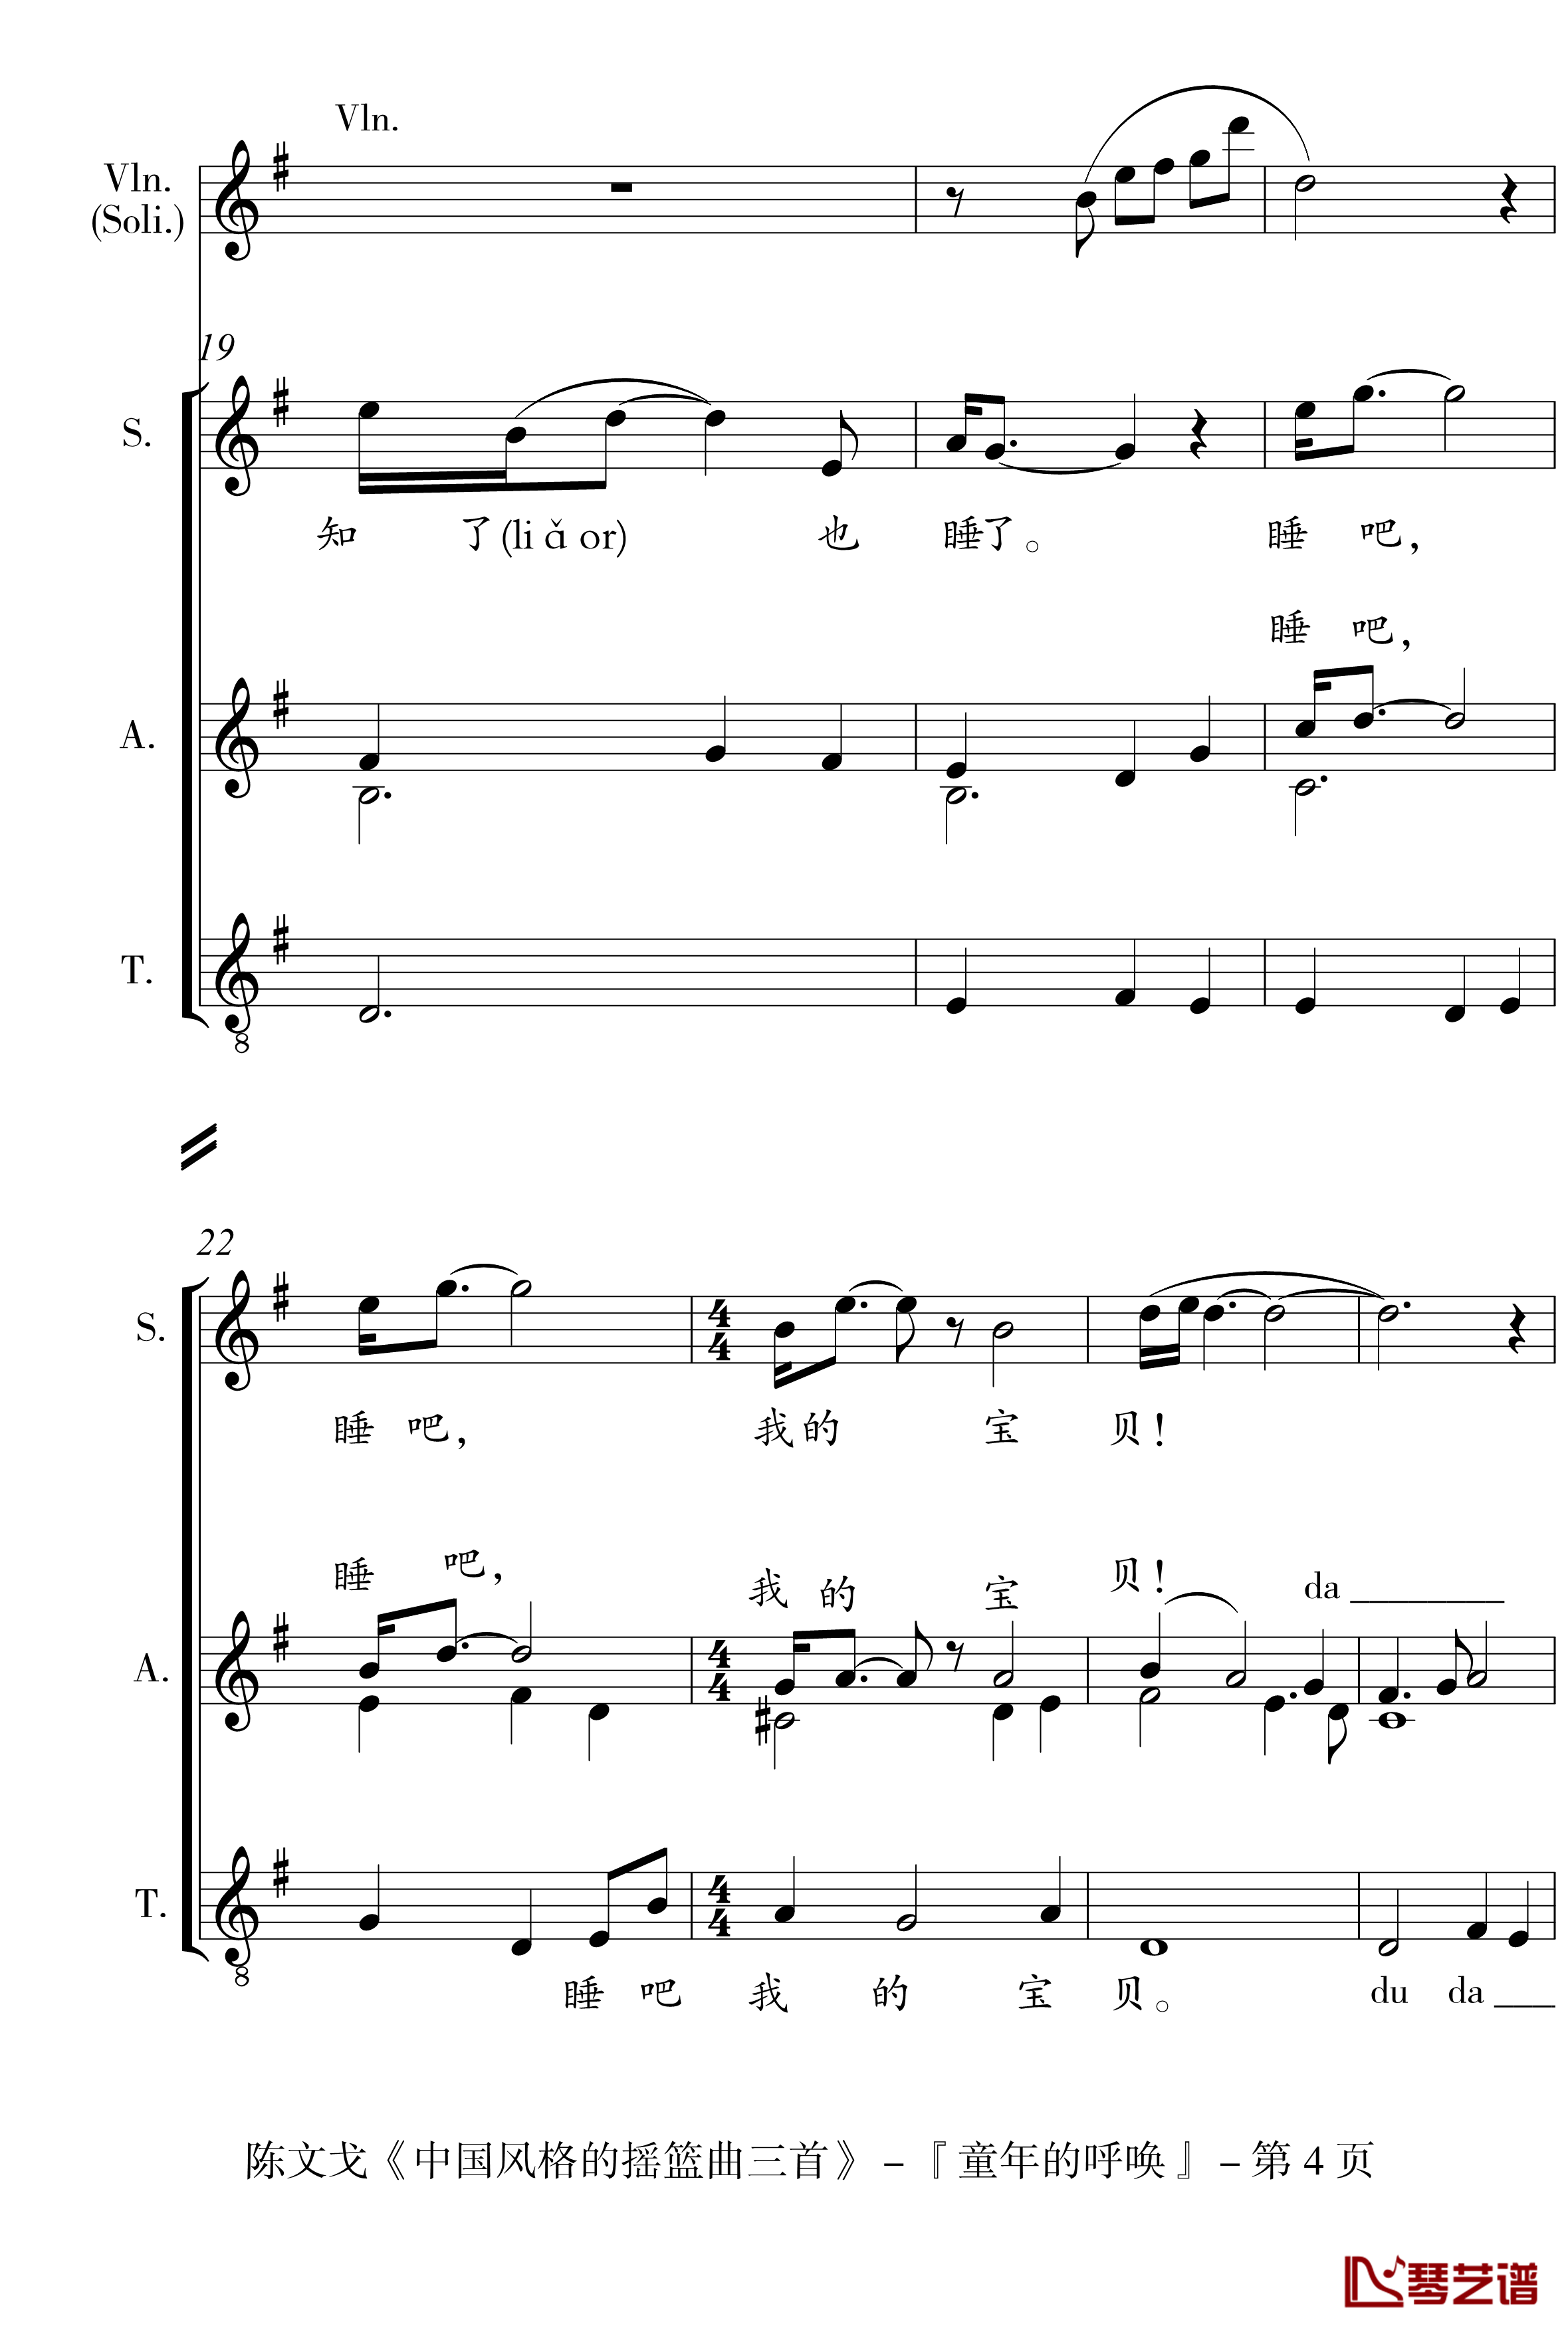 中国风格的合唱摇篮曲三首钢琴谱-I, II, III-陈文戈4